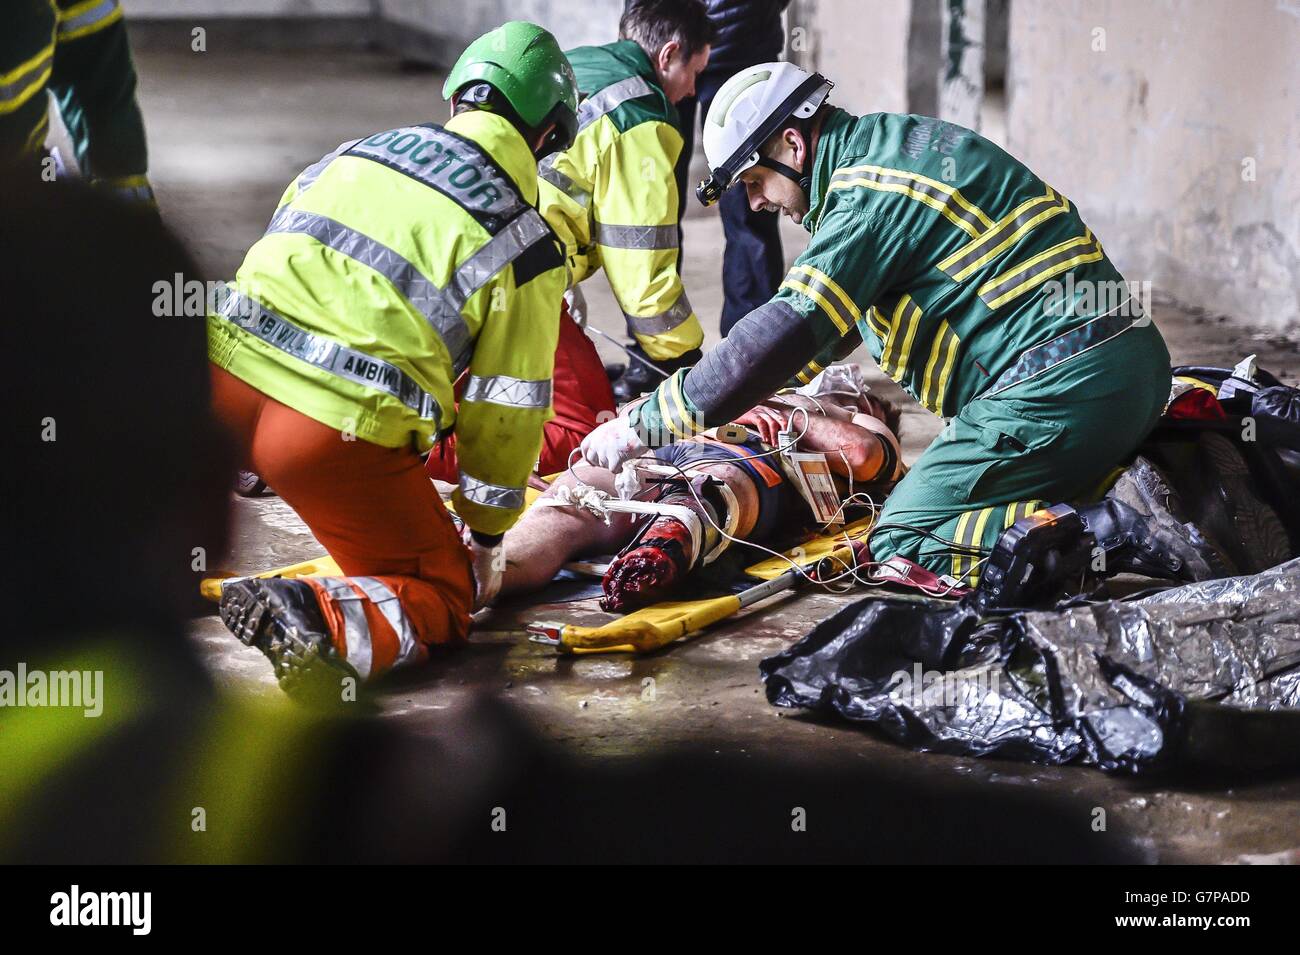 Une équipe de soins intensifs médicaux travaille sur une victime, posée par un acteur, au cours d'un exercice de formation multi-agences en direct près de Newport, au pays de Galles. Banque D'Images